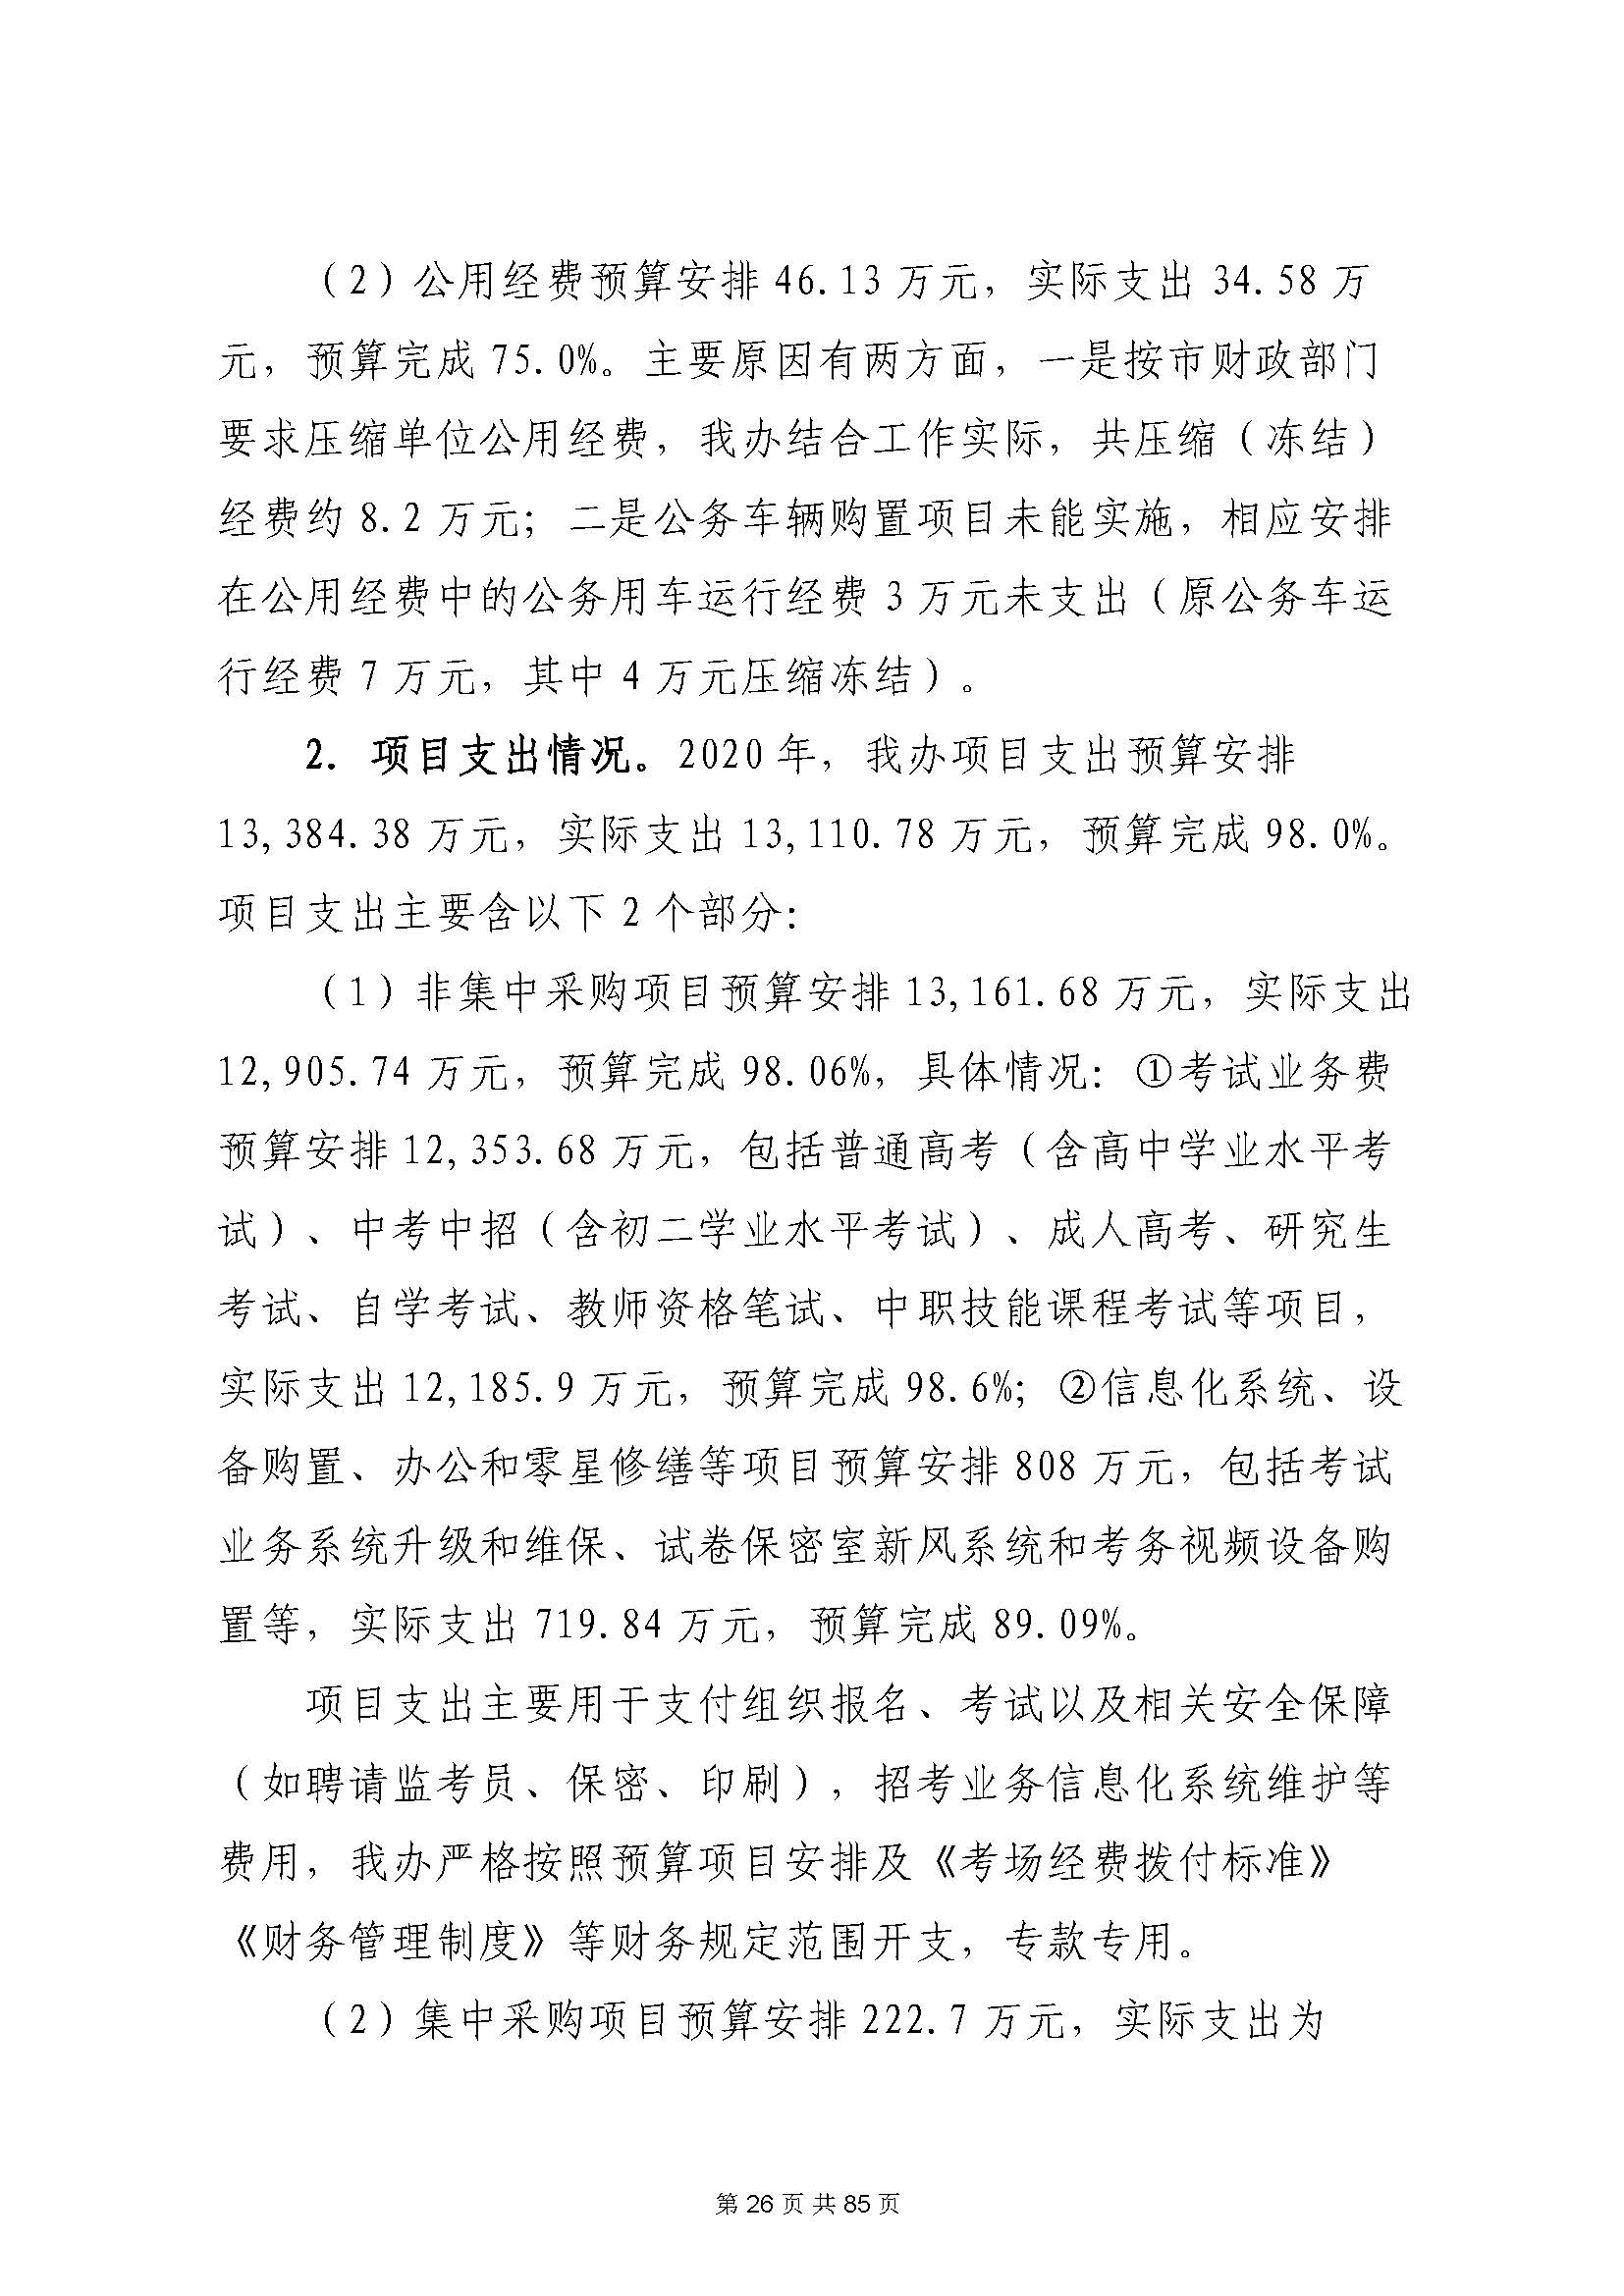 深圳市招生考试办公室2020年度部门决算_页面_27.jpg